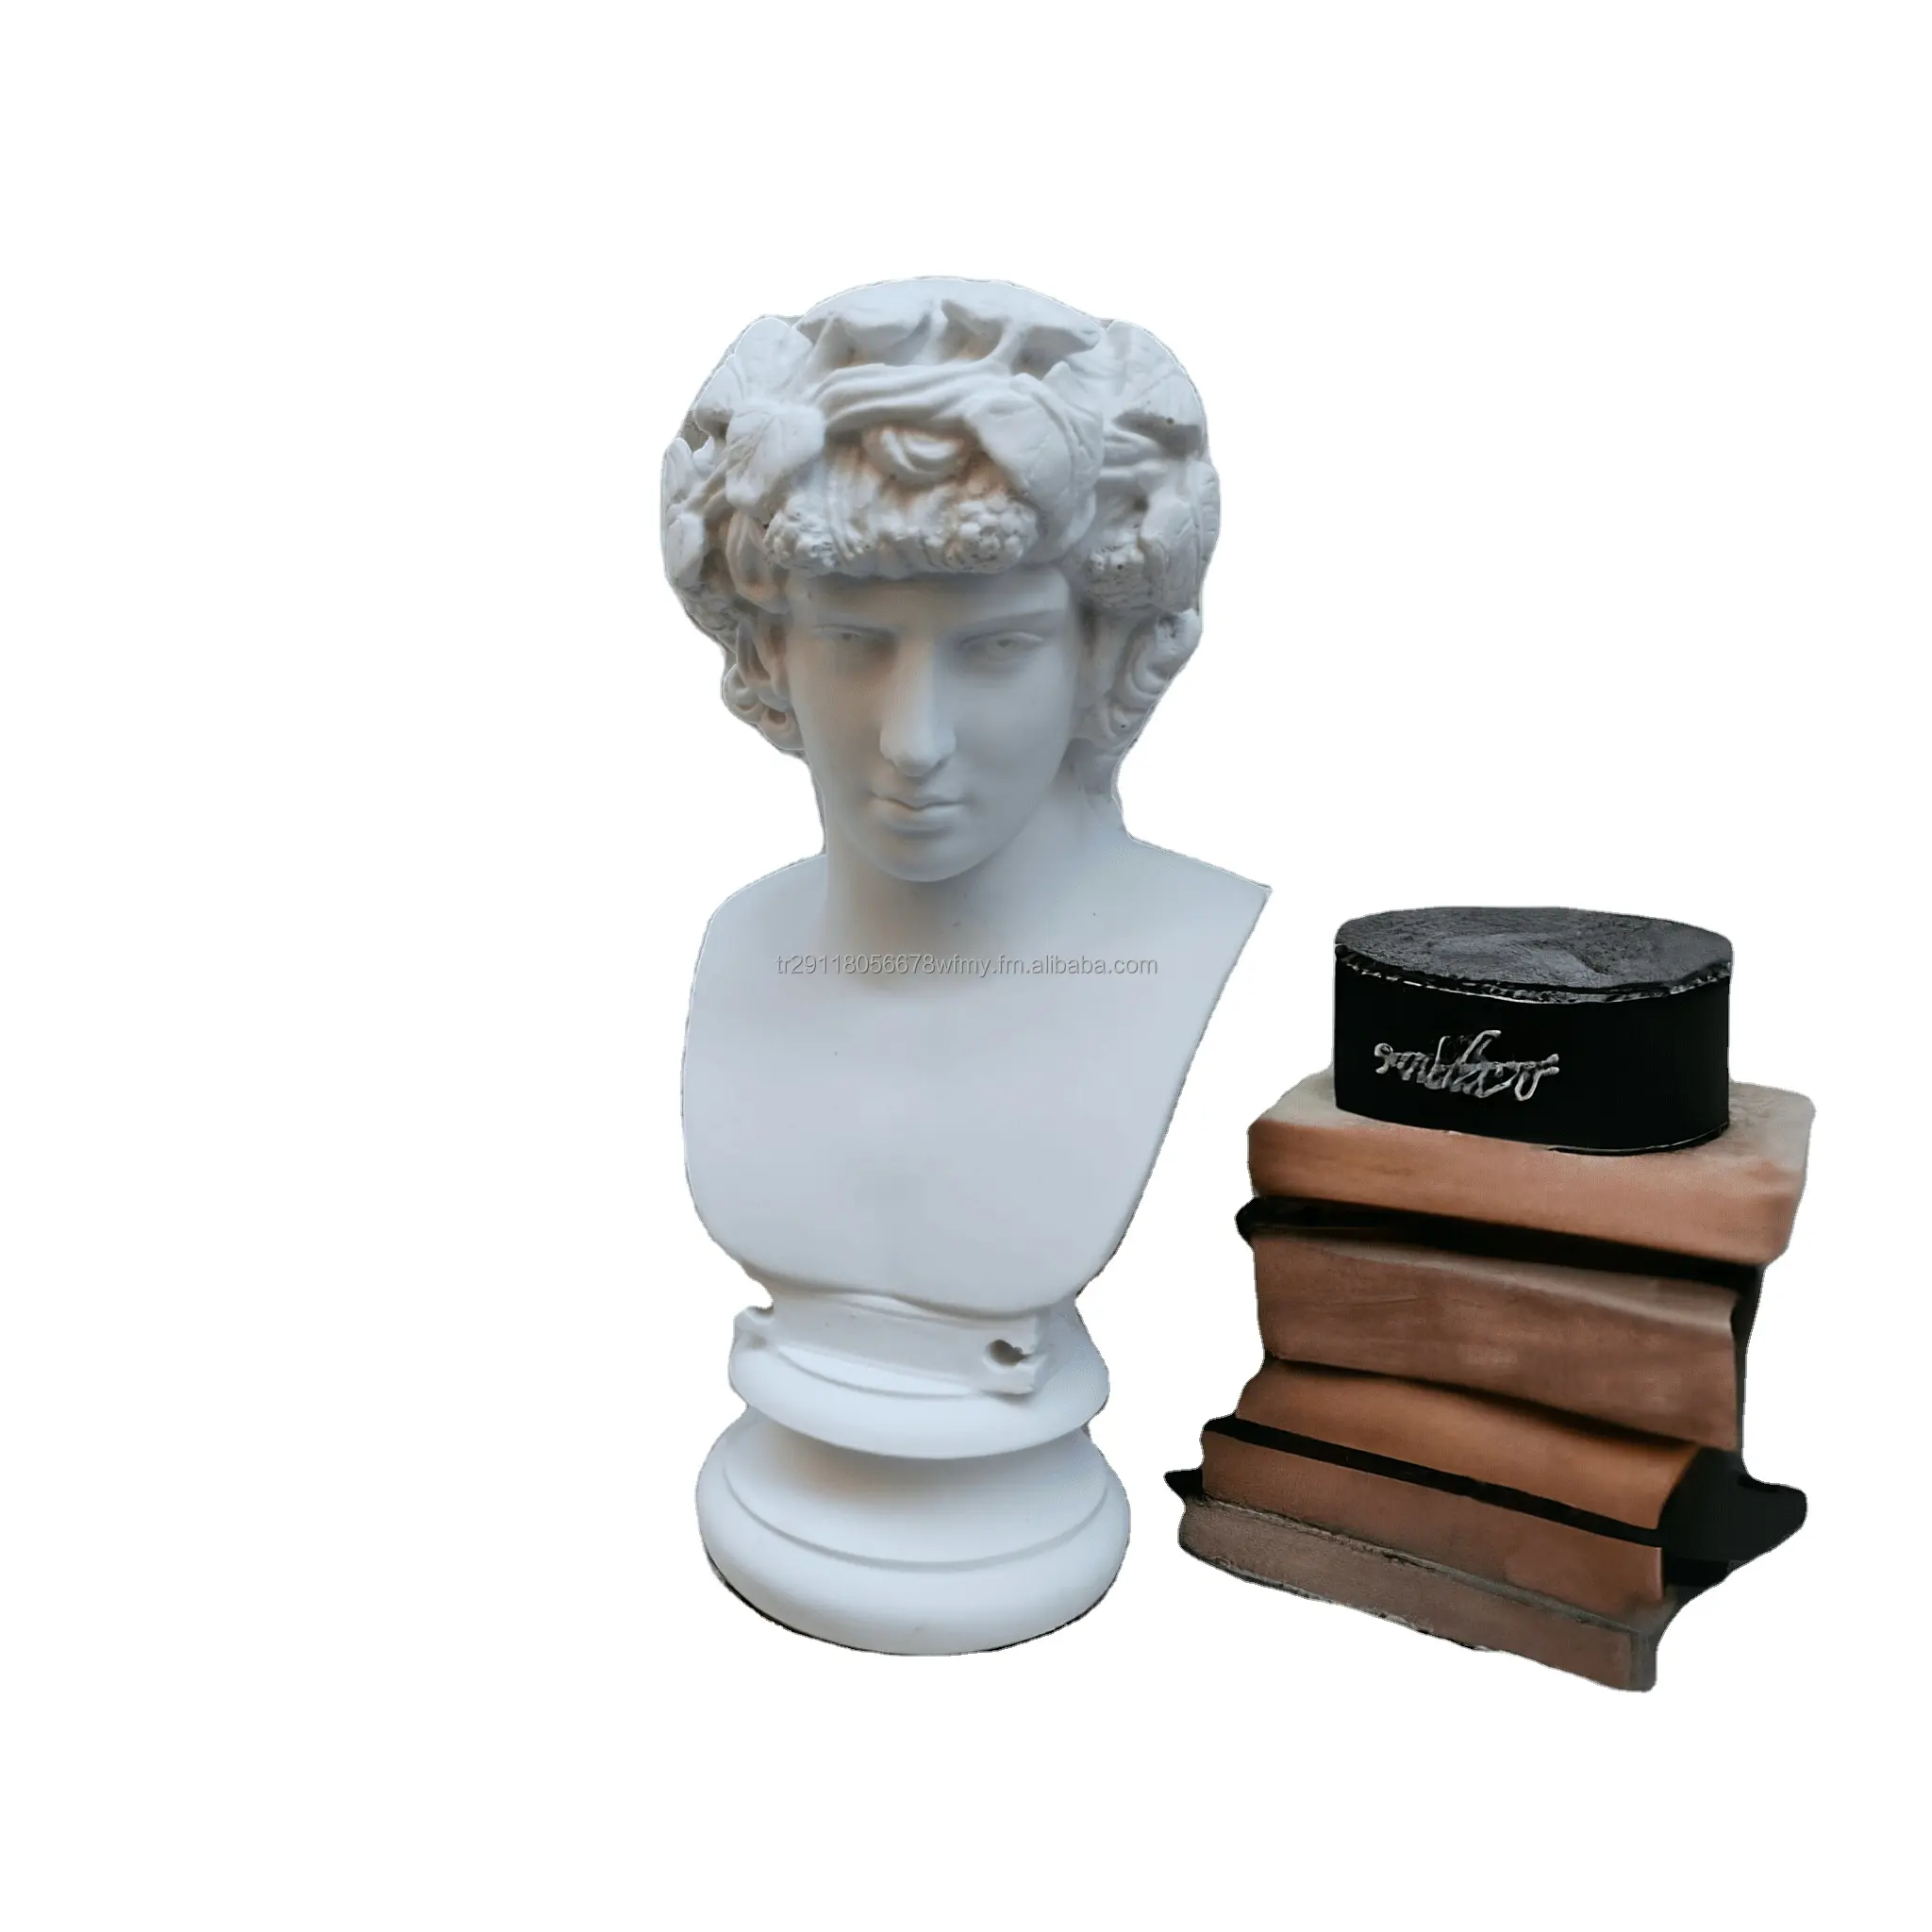 Dionysus antiguo dios griego del busto del vino estatua antigua decoración del hogar mitología griega busto escultura romana hogar moda arte objetos